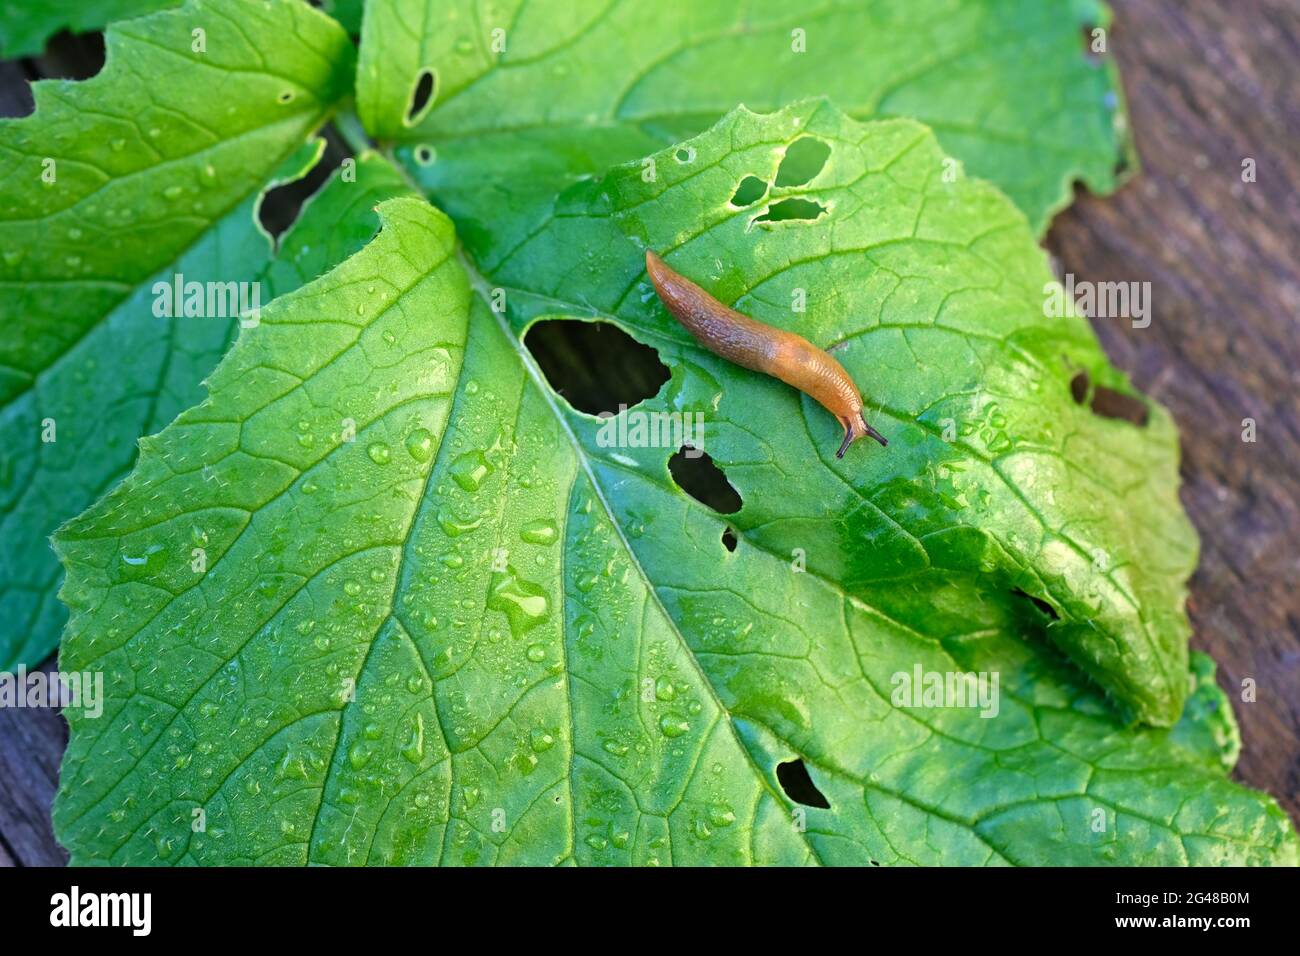 Arion lusitanicus Nahaufnahme von beschädigten Rettichblättern. Braune Schnecke auf einem grünen, nassen Rettichblatt Draufsicht. Stockfoto